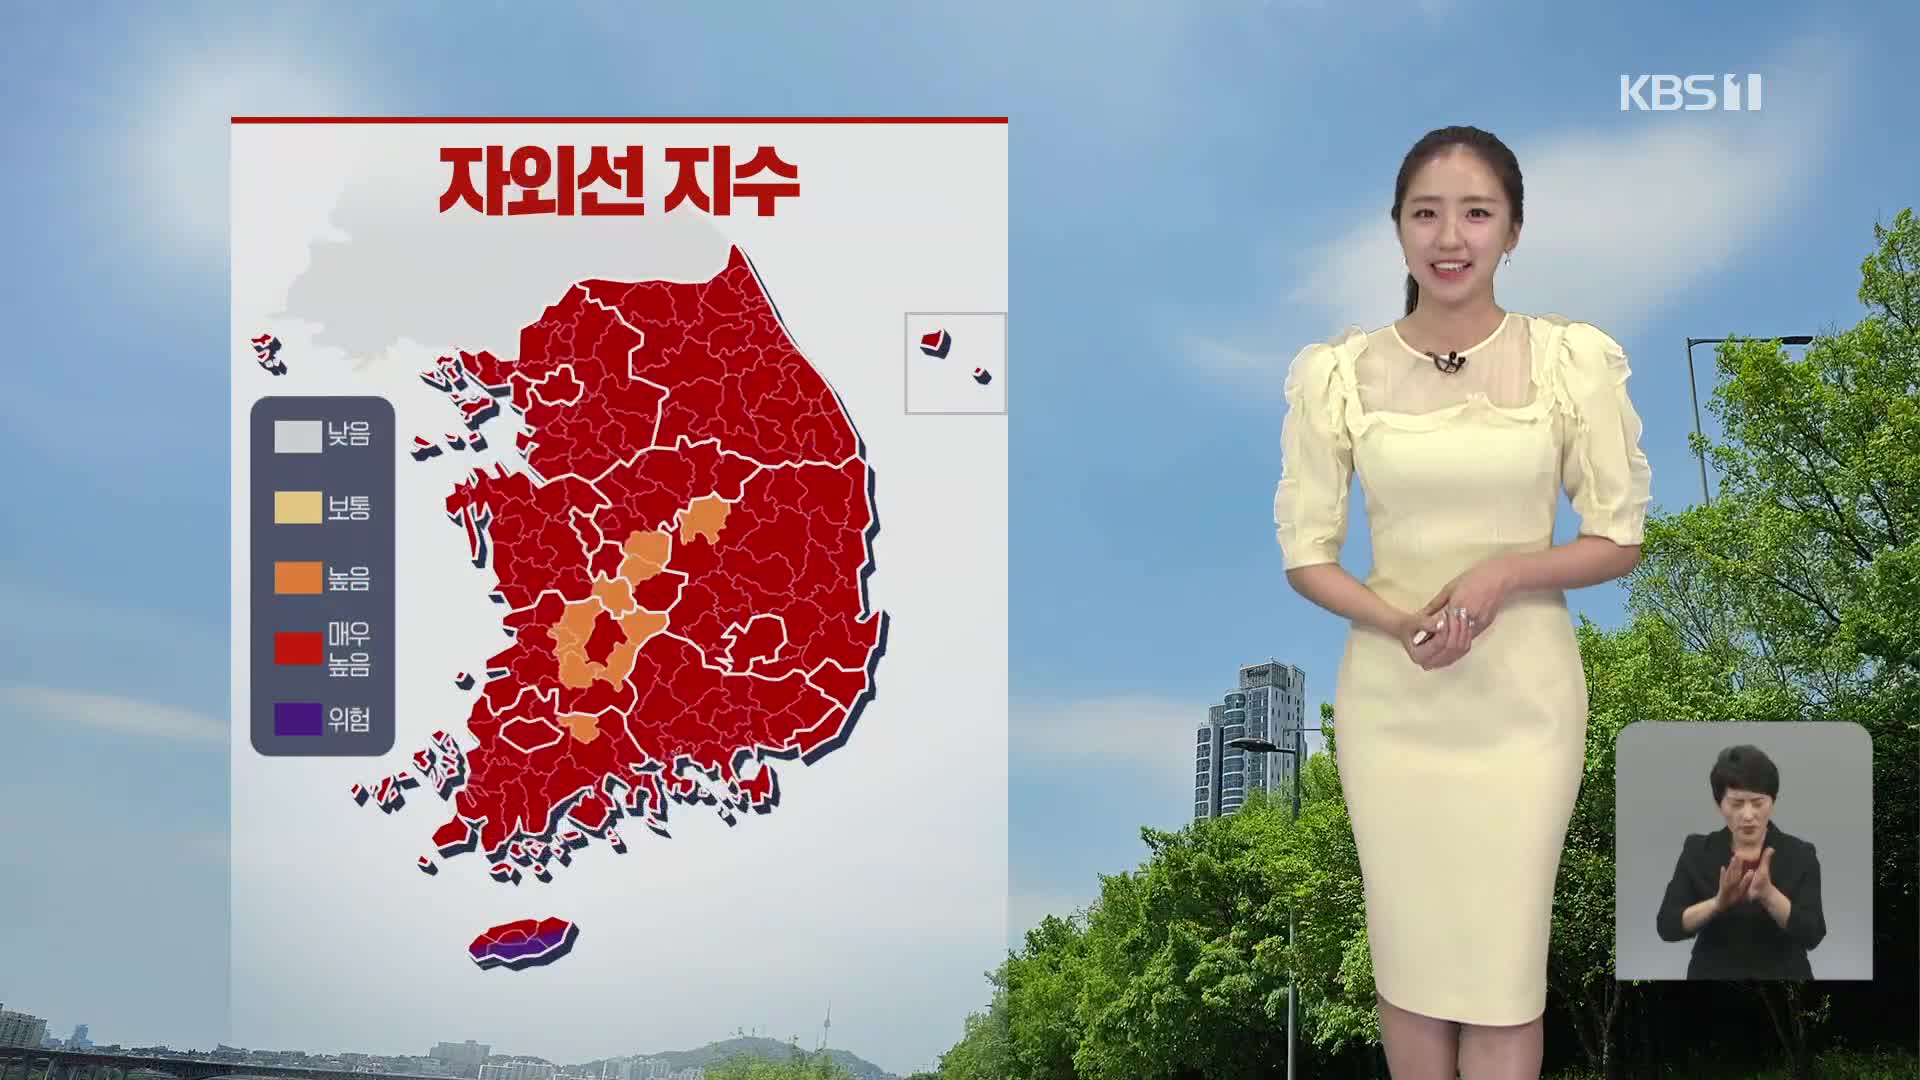 [12시 날씨] 주말, 한낮 30도 안팎 더위…경북 동부 소나기